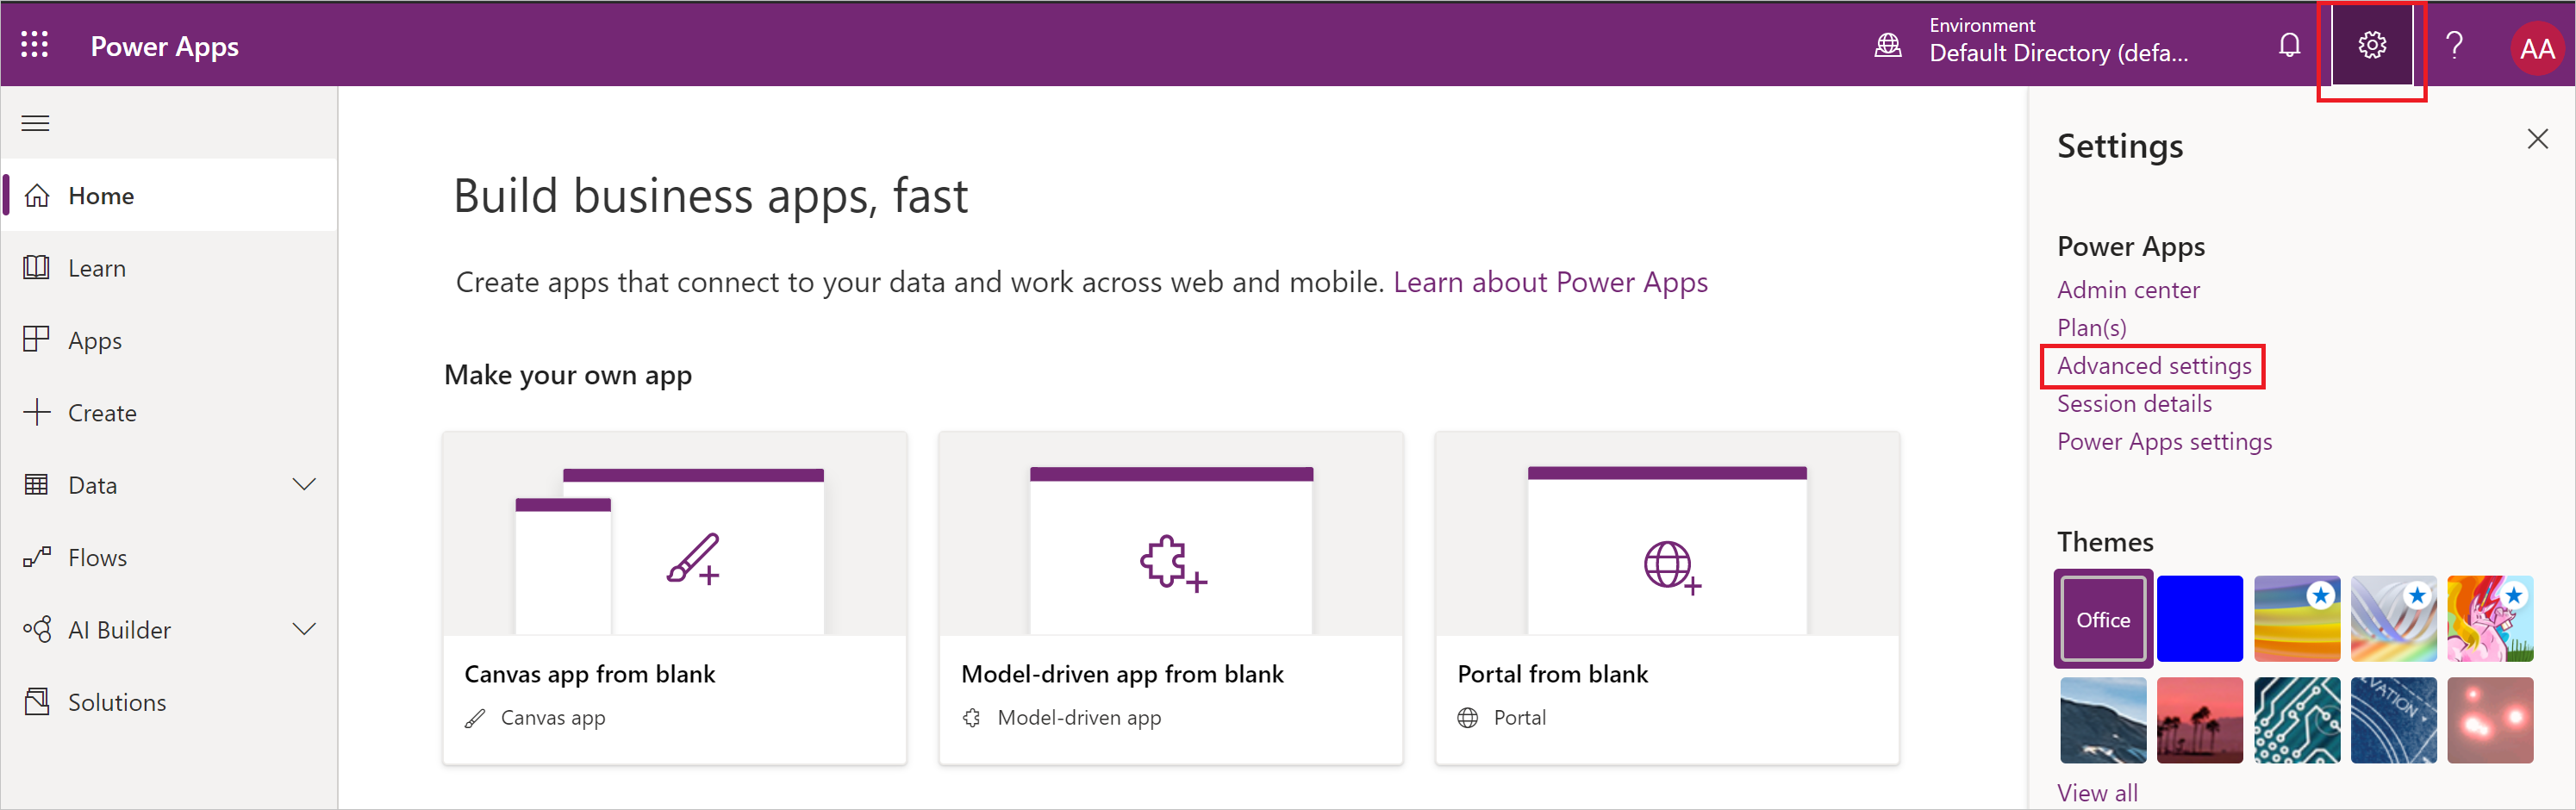 Captura de tela do menu Configurações do Power Apps com Configurações avançadas em destaque.